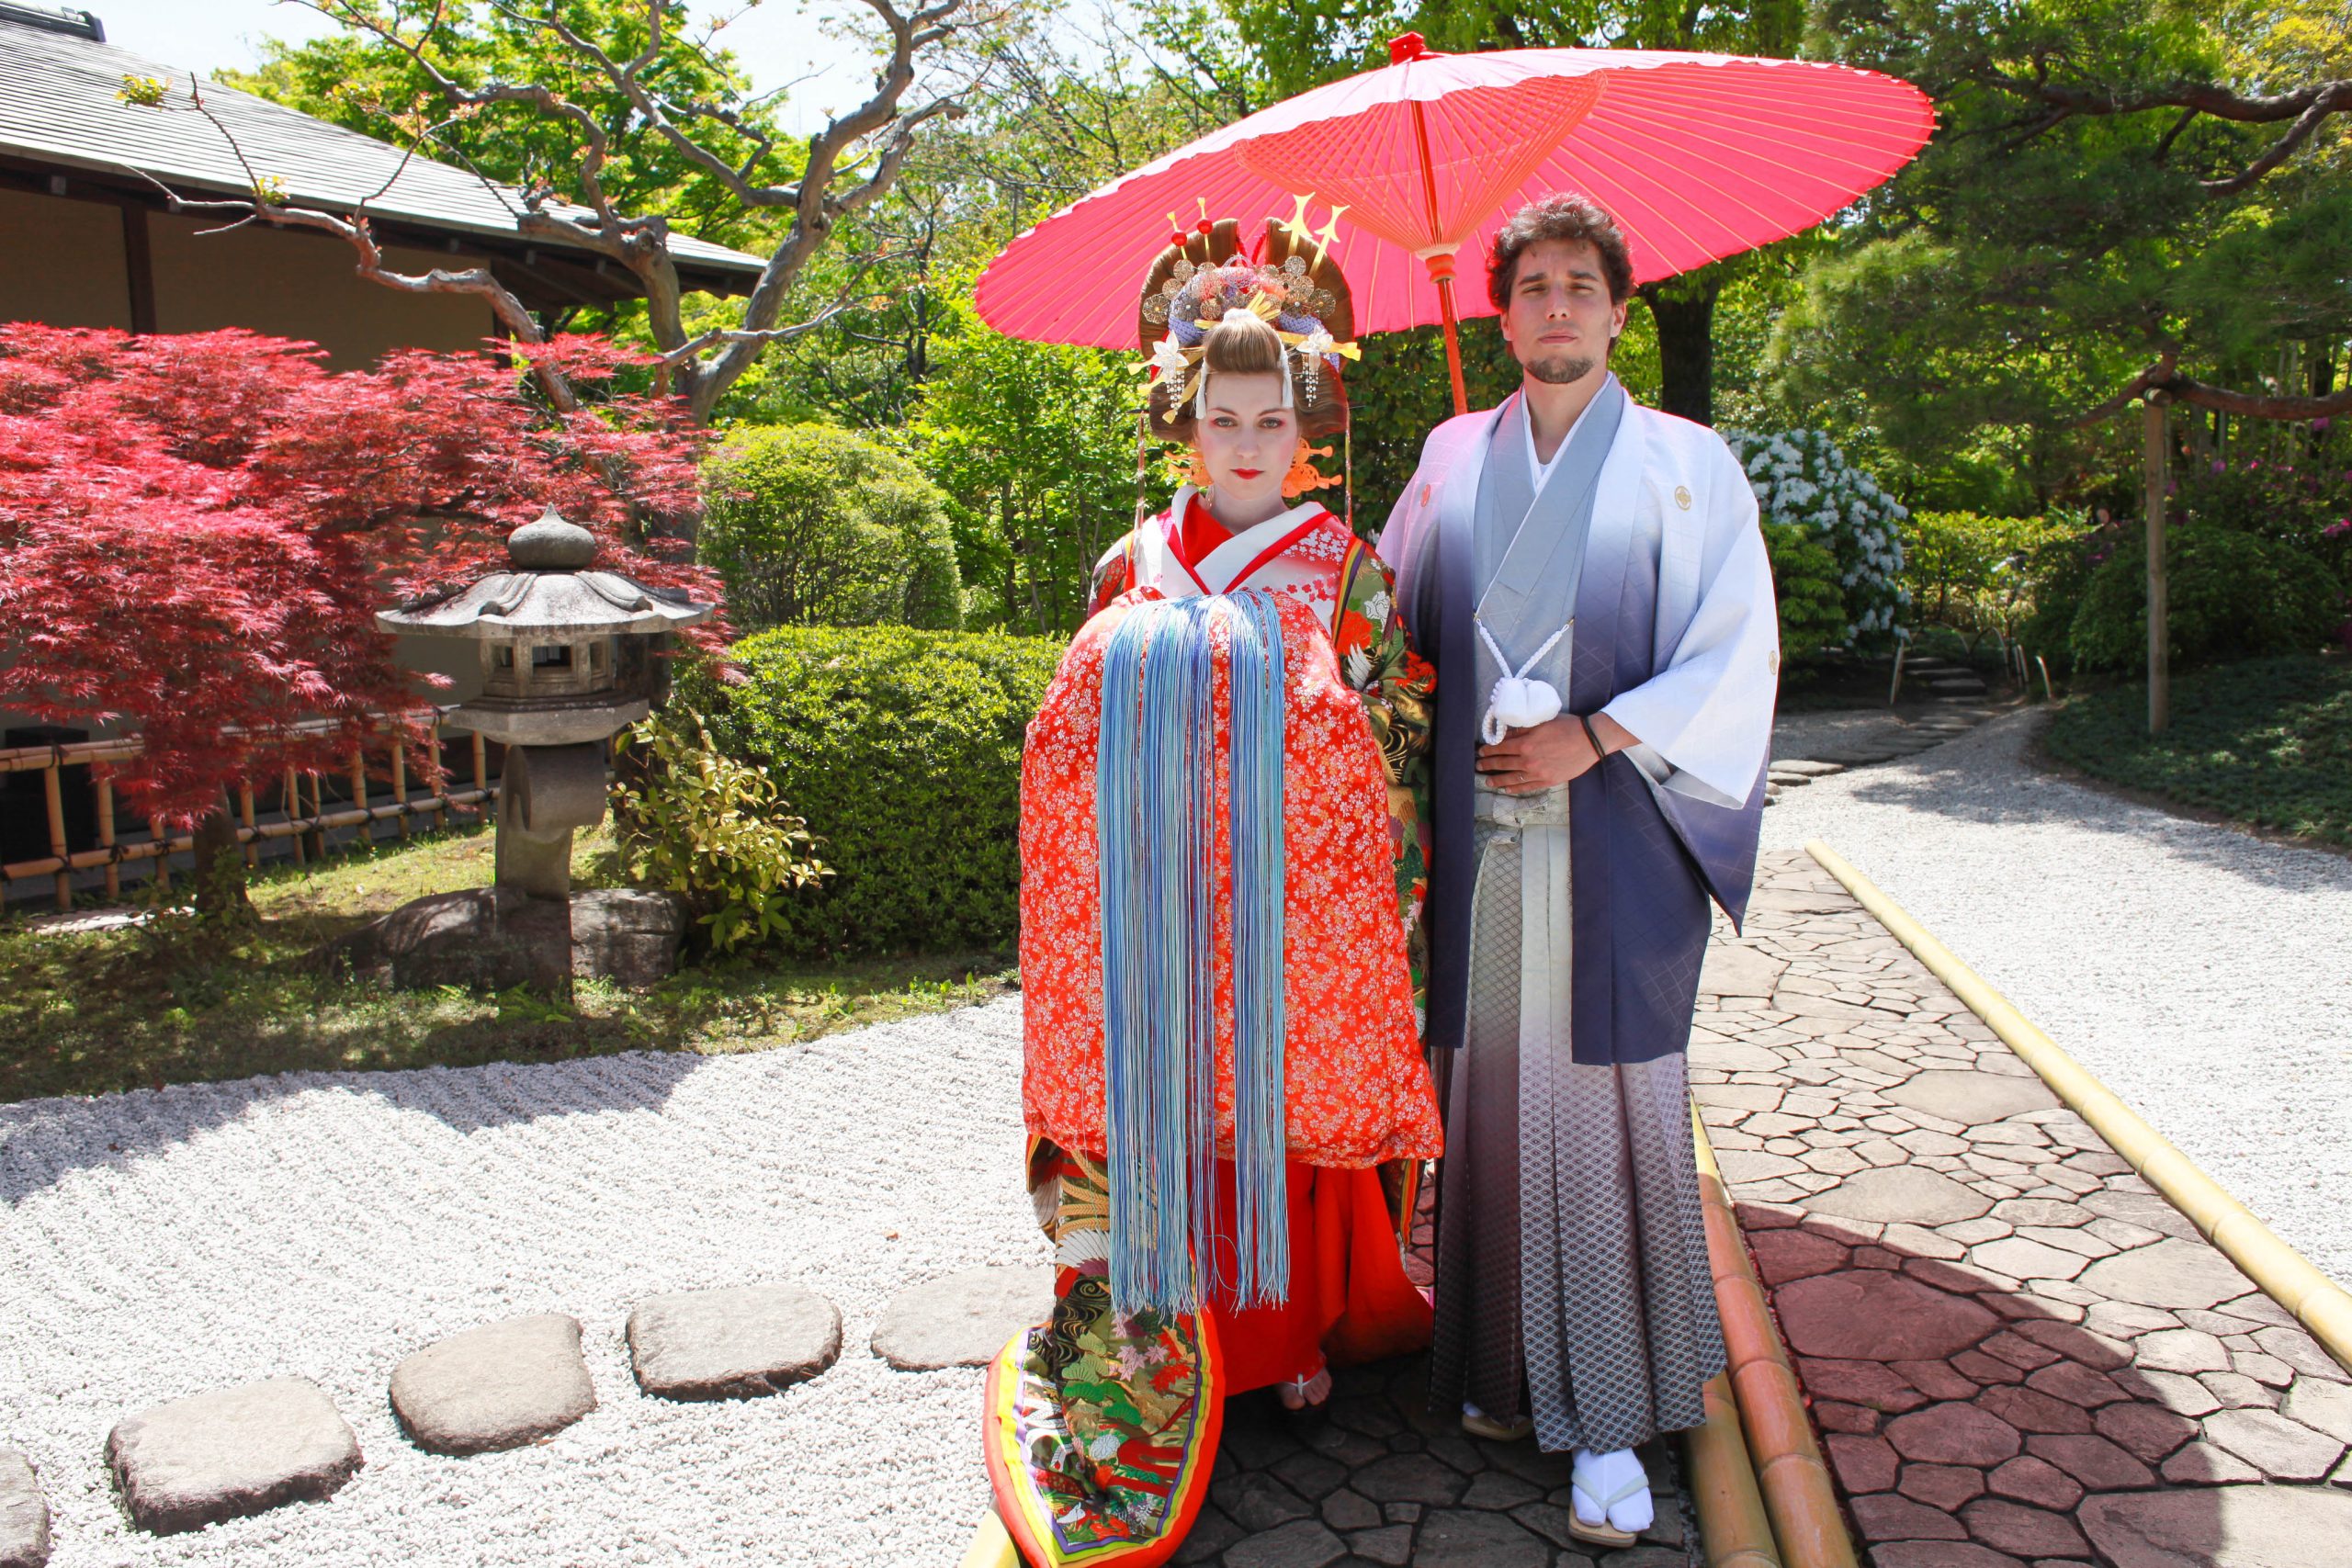 Japanese Kimono For Women